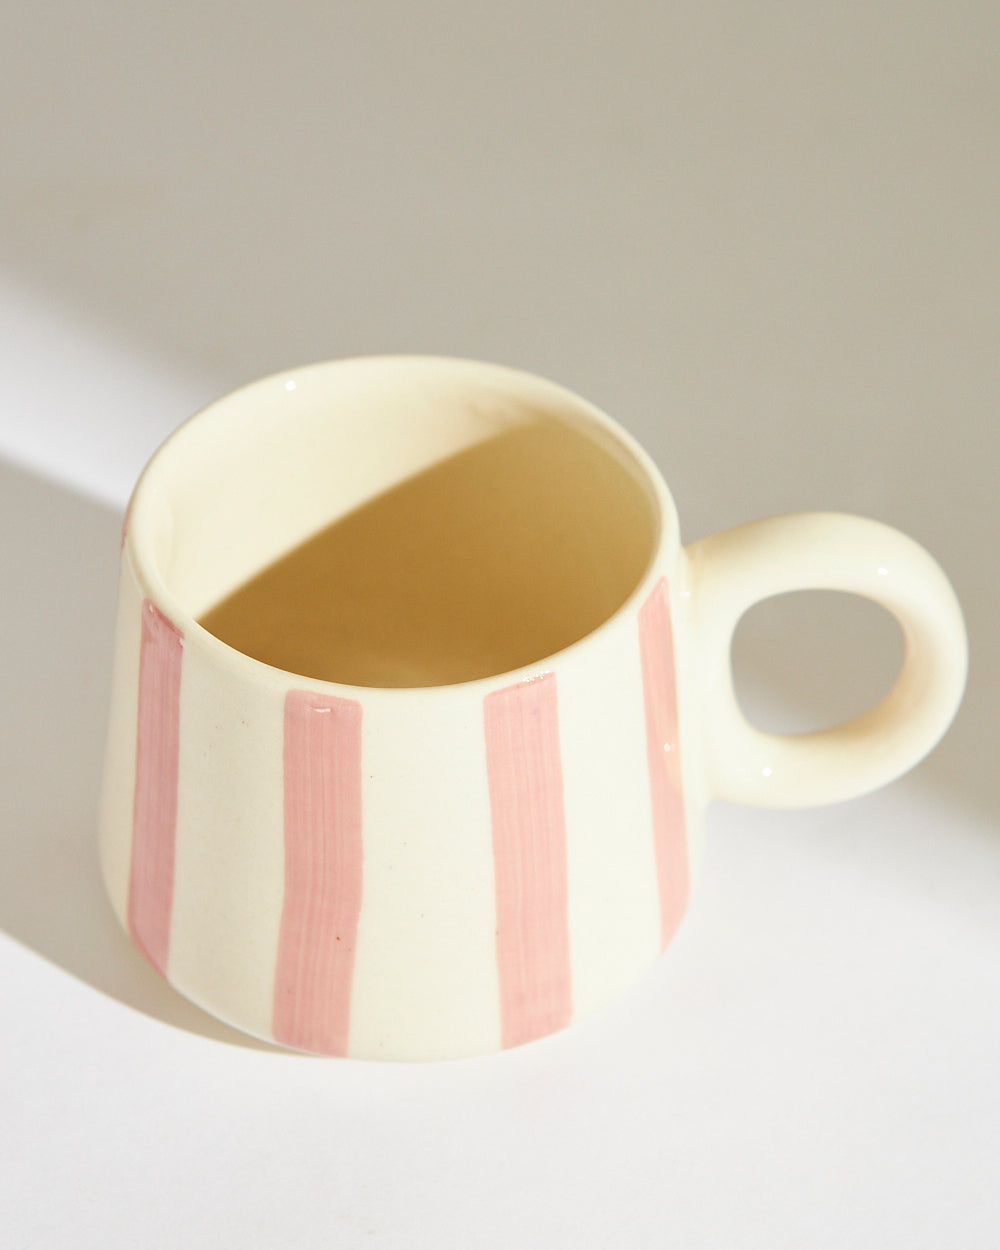 Essentials Love Stripes Mug